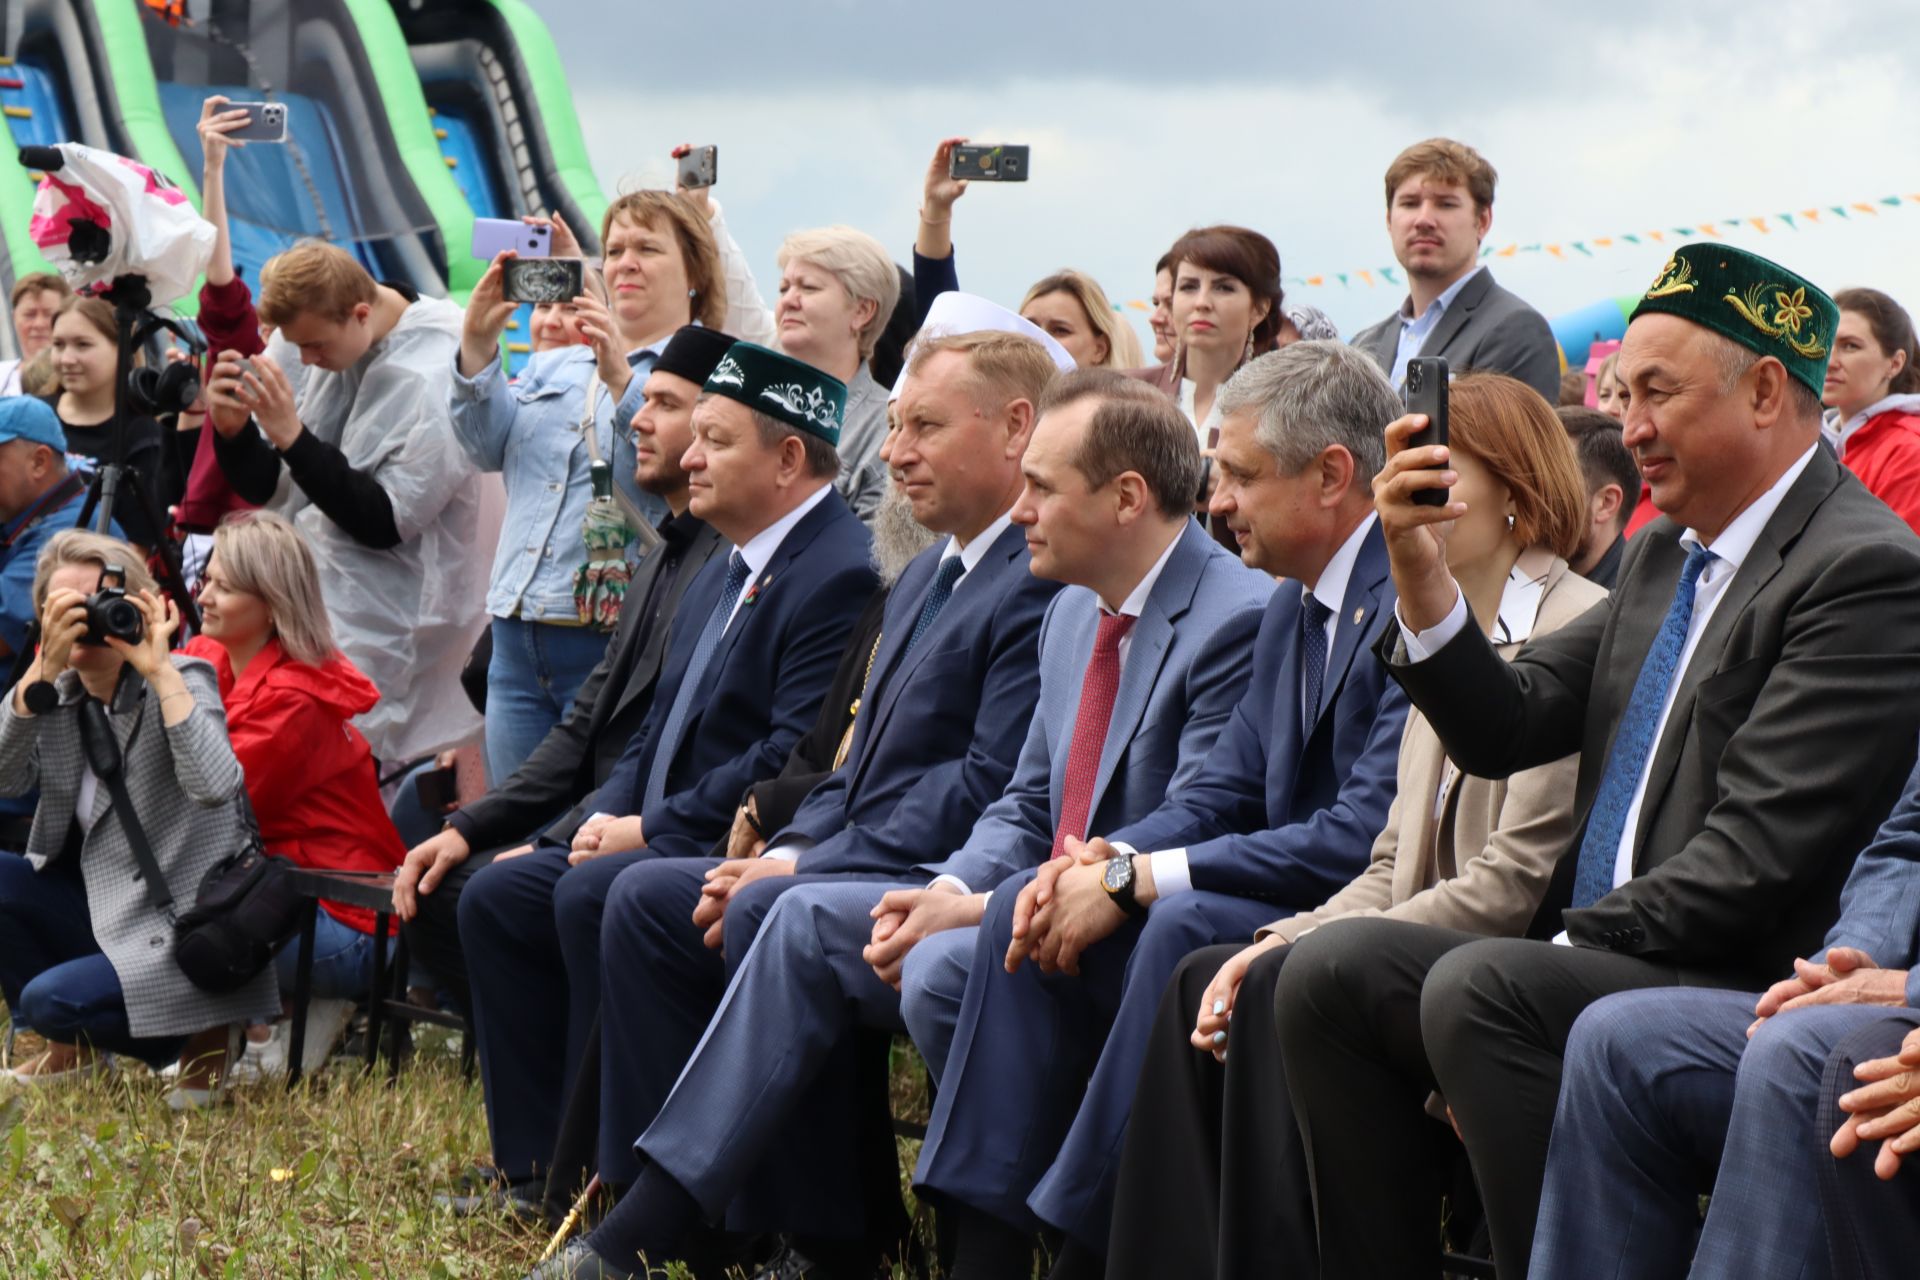 Нурлатский район достойно представил Татарстан на республиканском Сабантуе в Мордовии